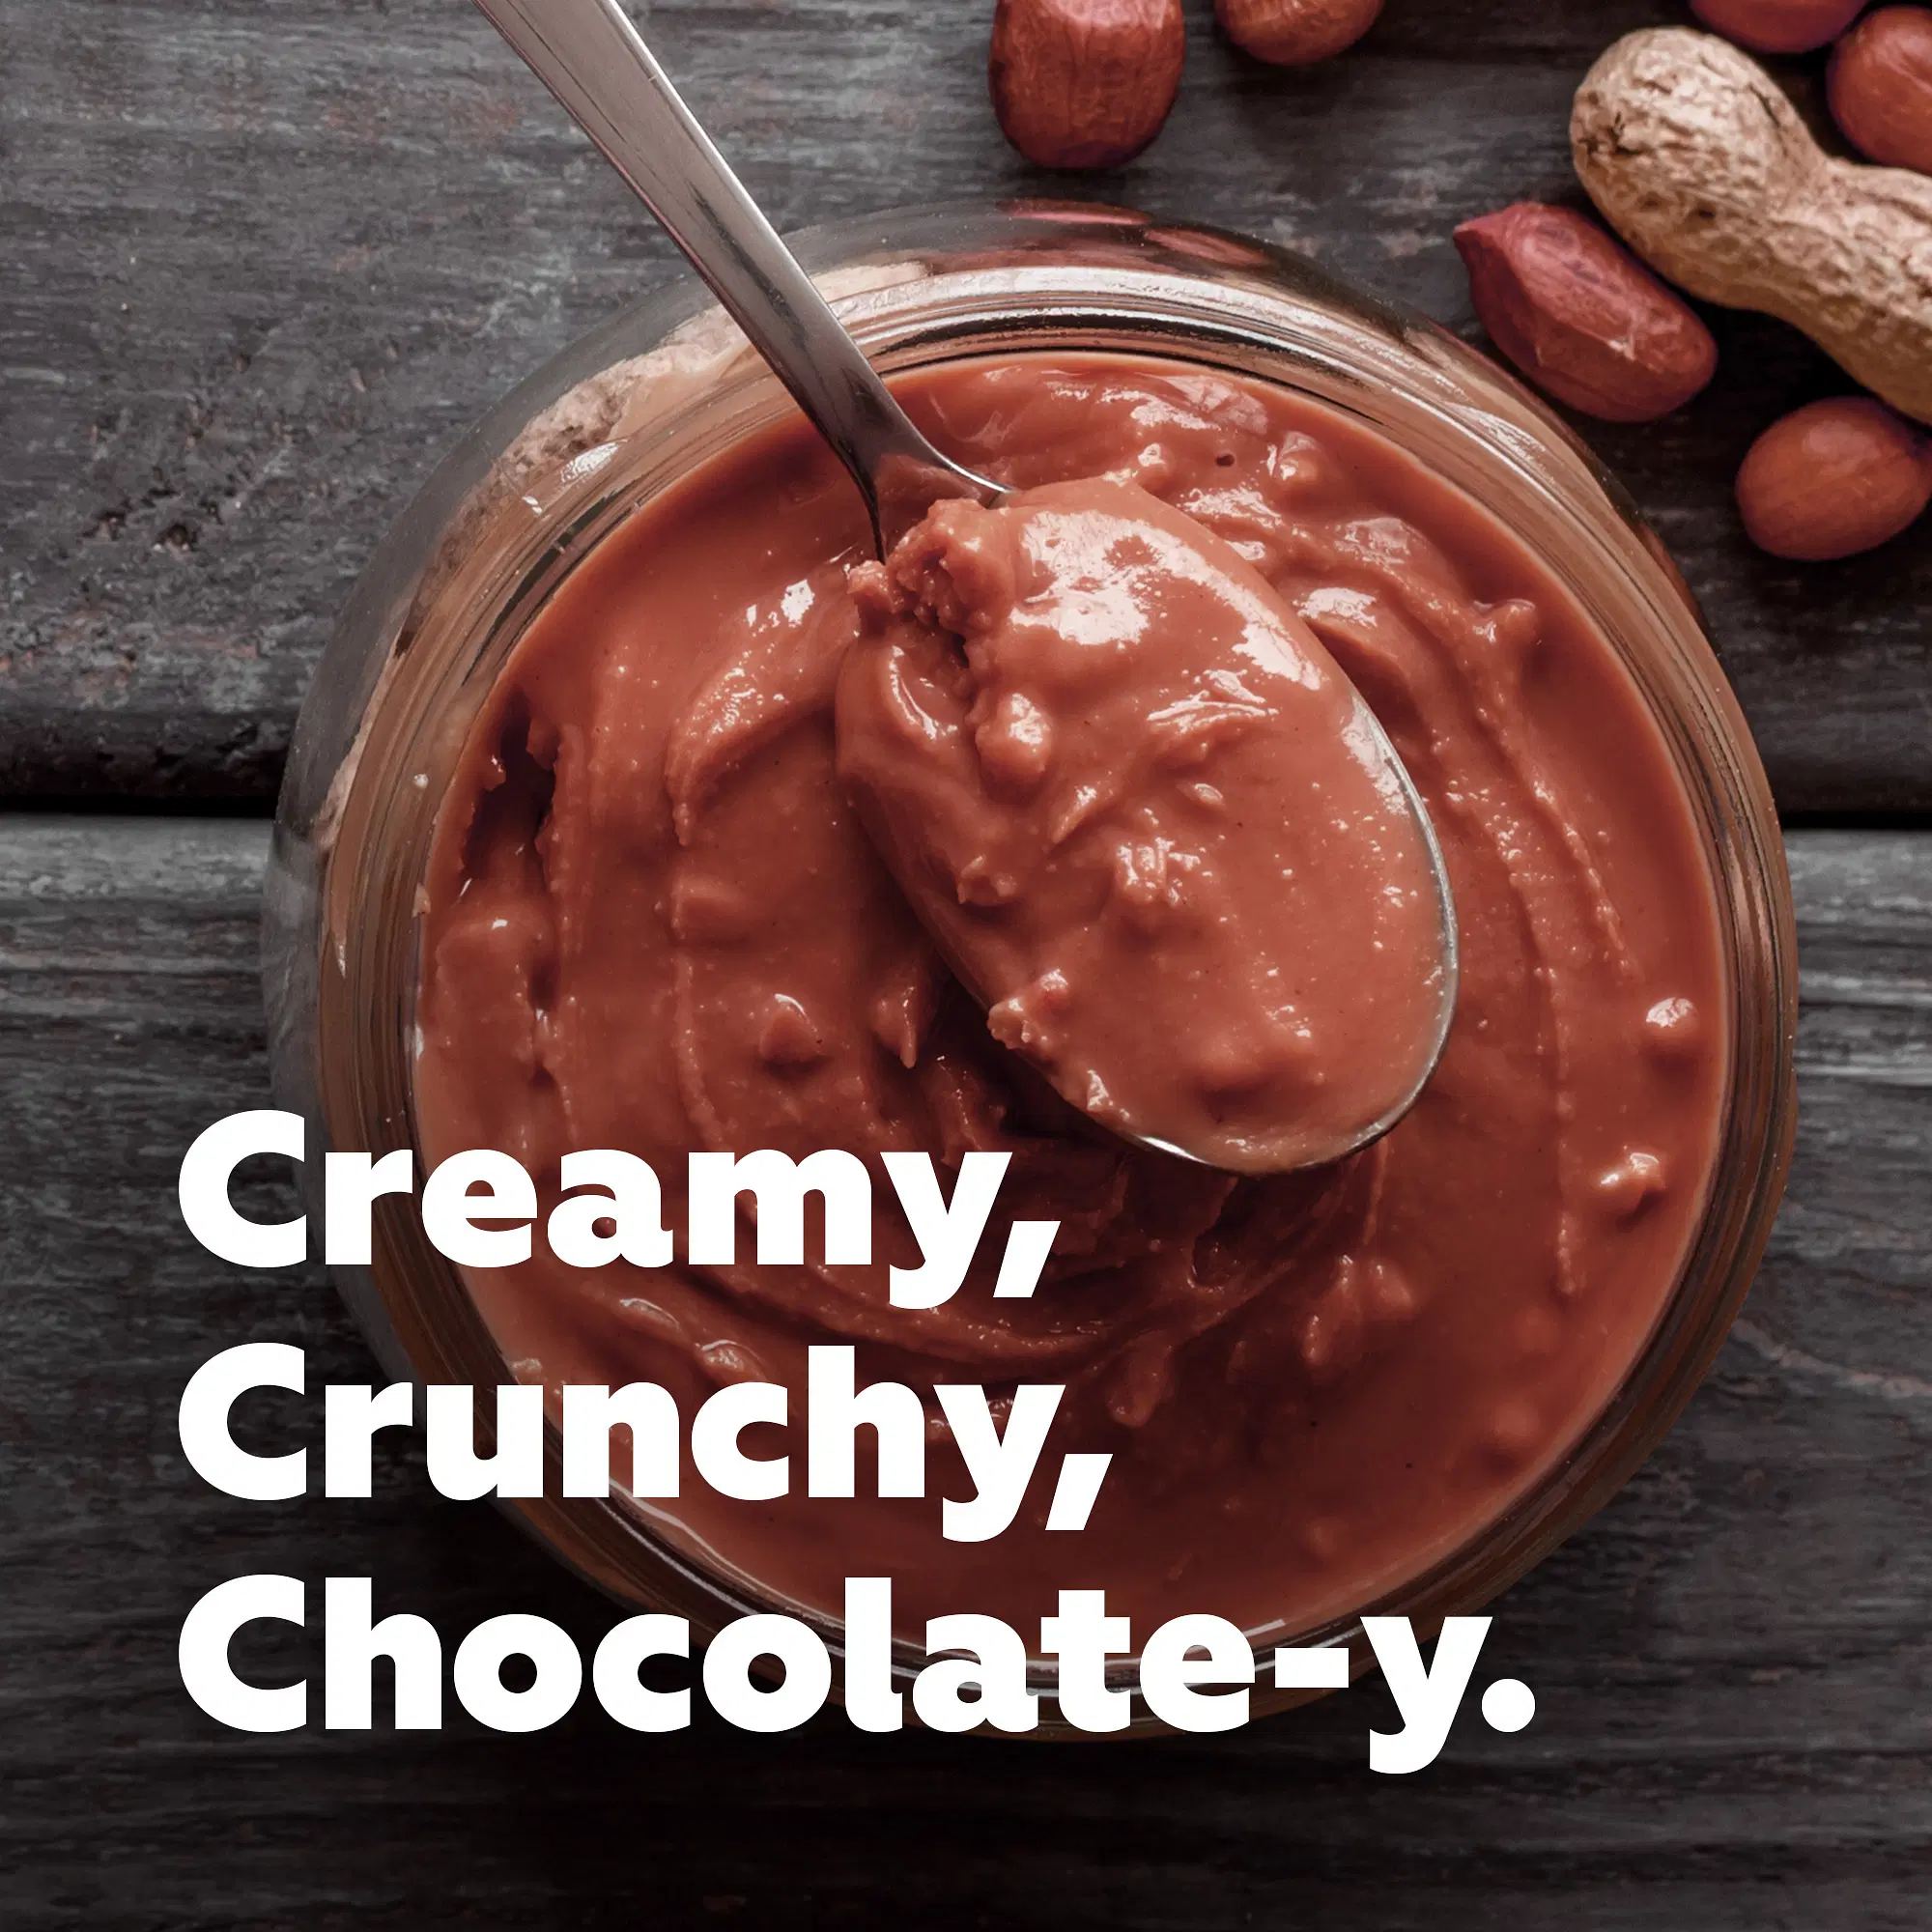 Yogabar Crunchy Peanut Butter 1kg, Dark Chocolate Peanut Butter Crunchy  with No Palm Oil & Anti-Oxidants, Creamy, Crunchy & Chocolatey